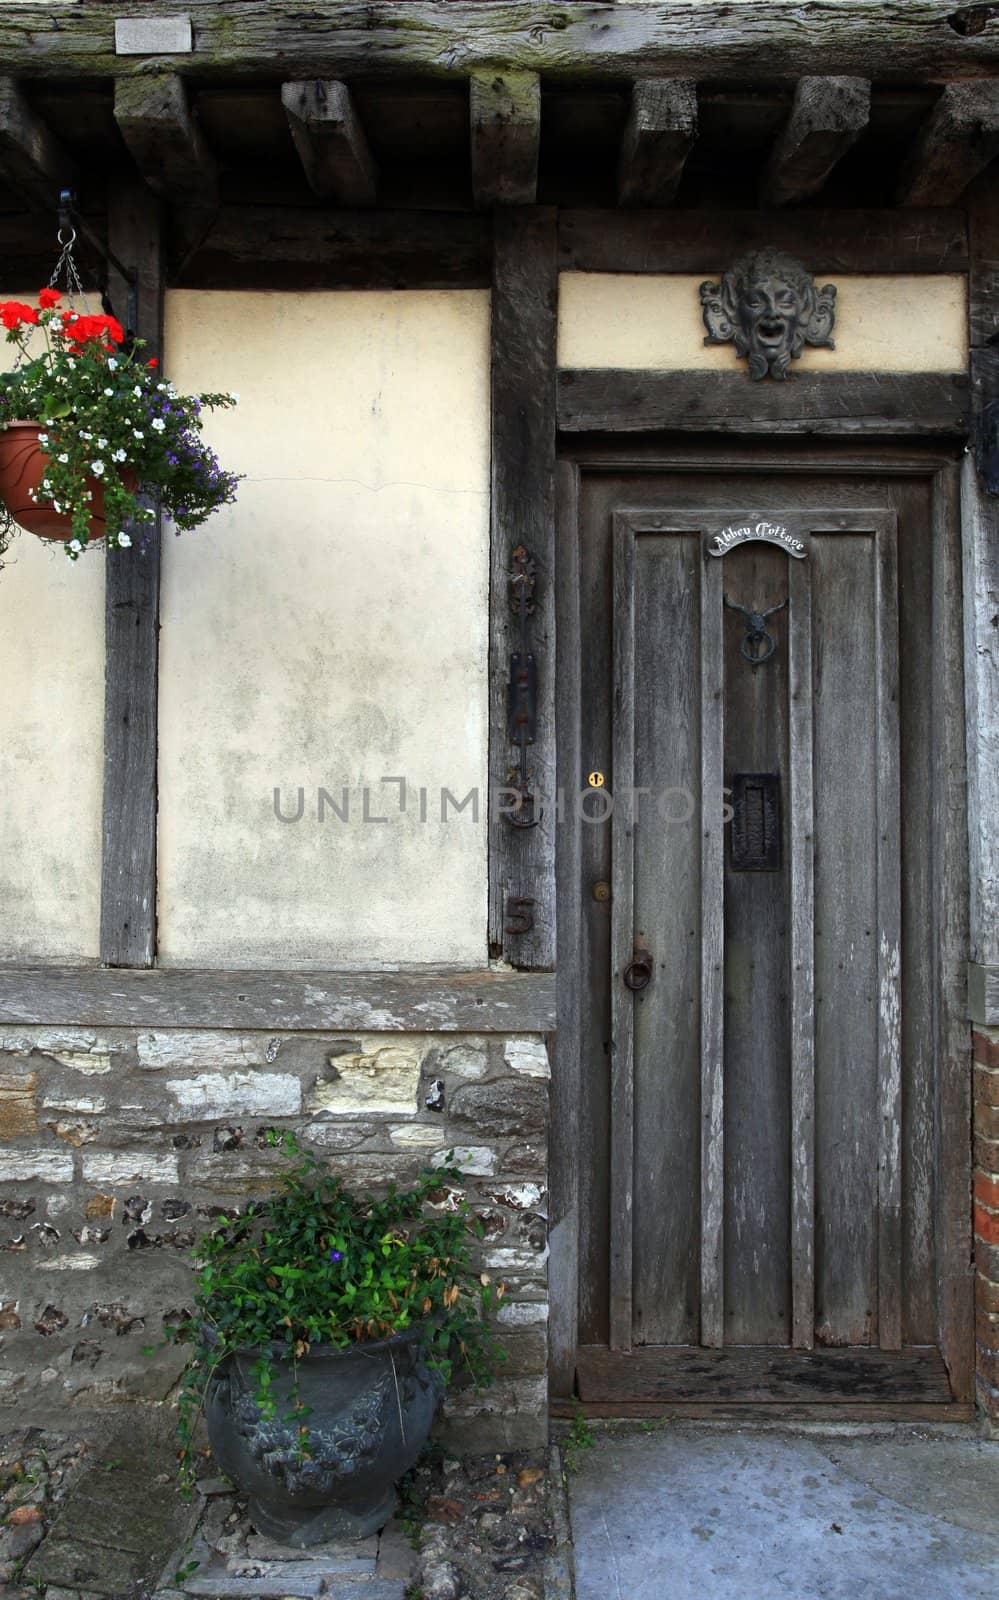 Historic doorway in doret england by olliemt